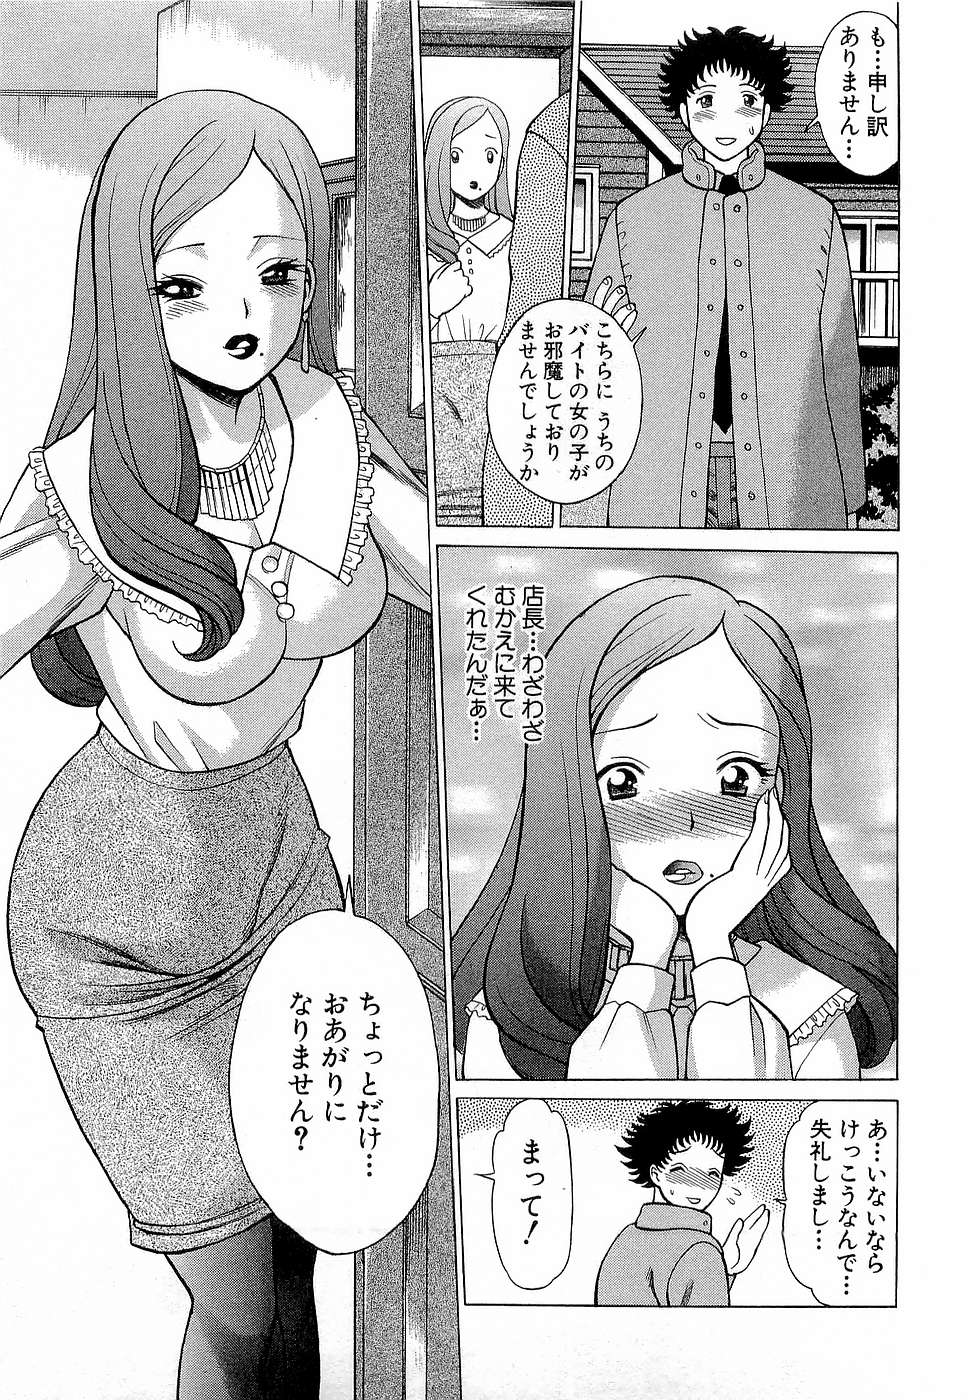 [Tamaki Nozomu] Nanairo Karen x3 Cosplay Complex page 40 full